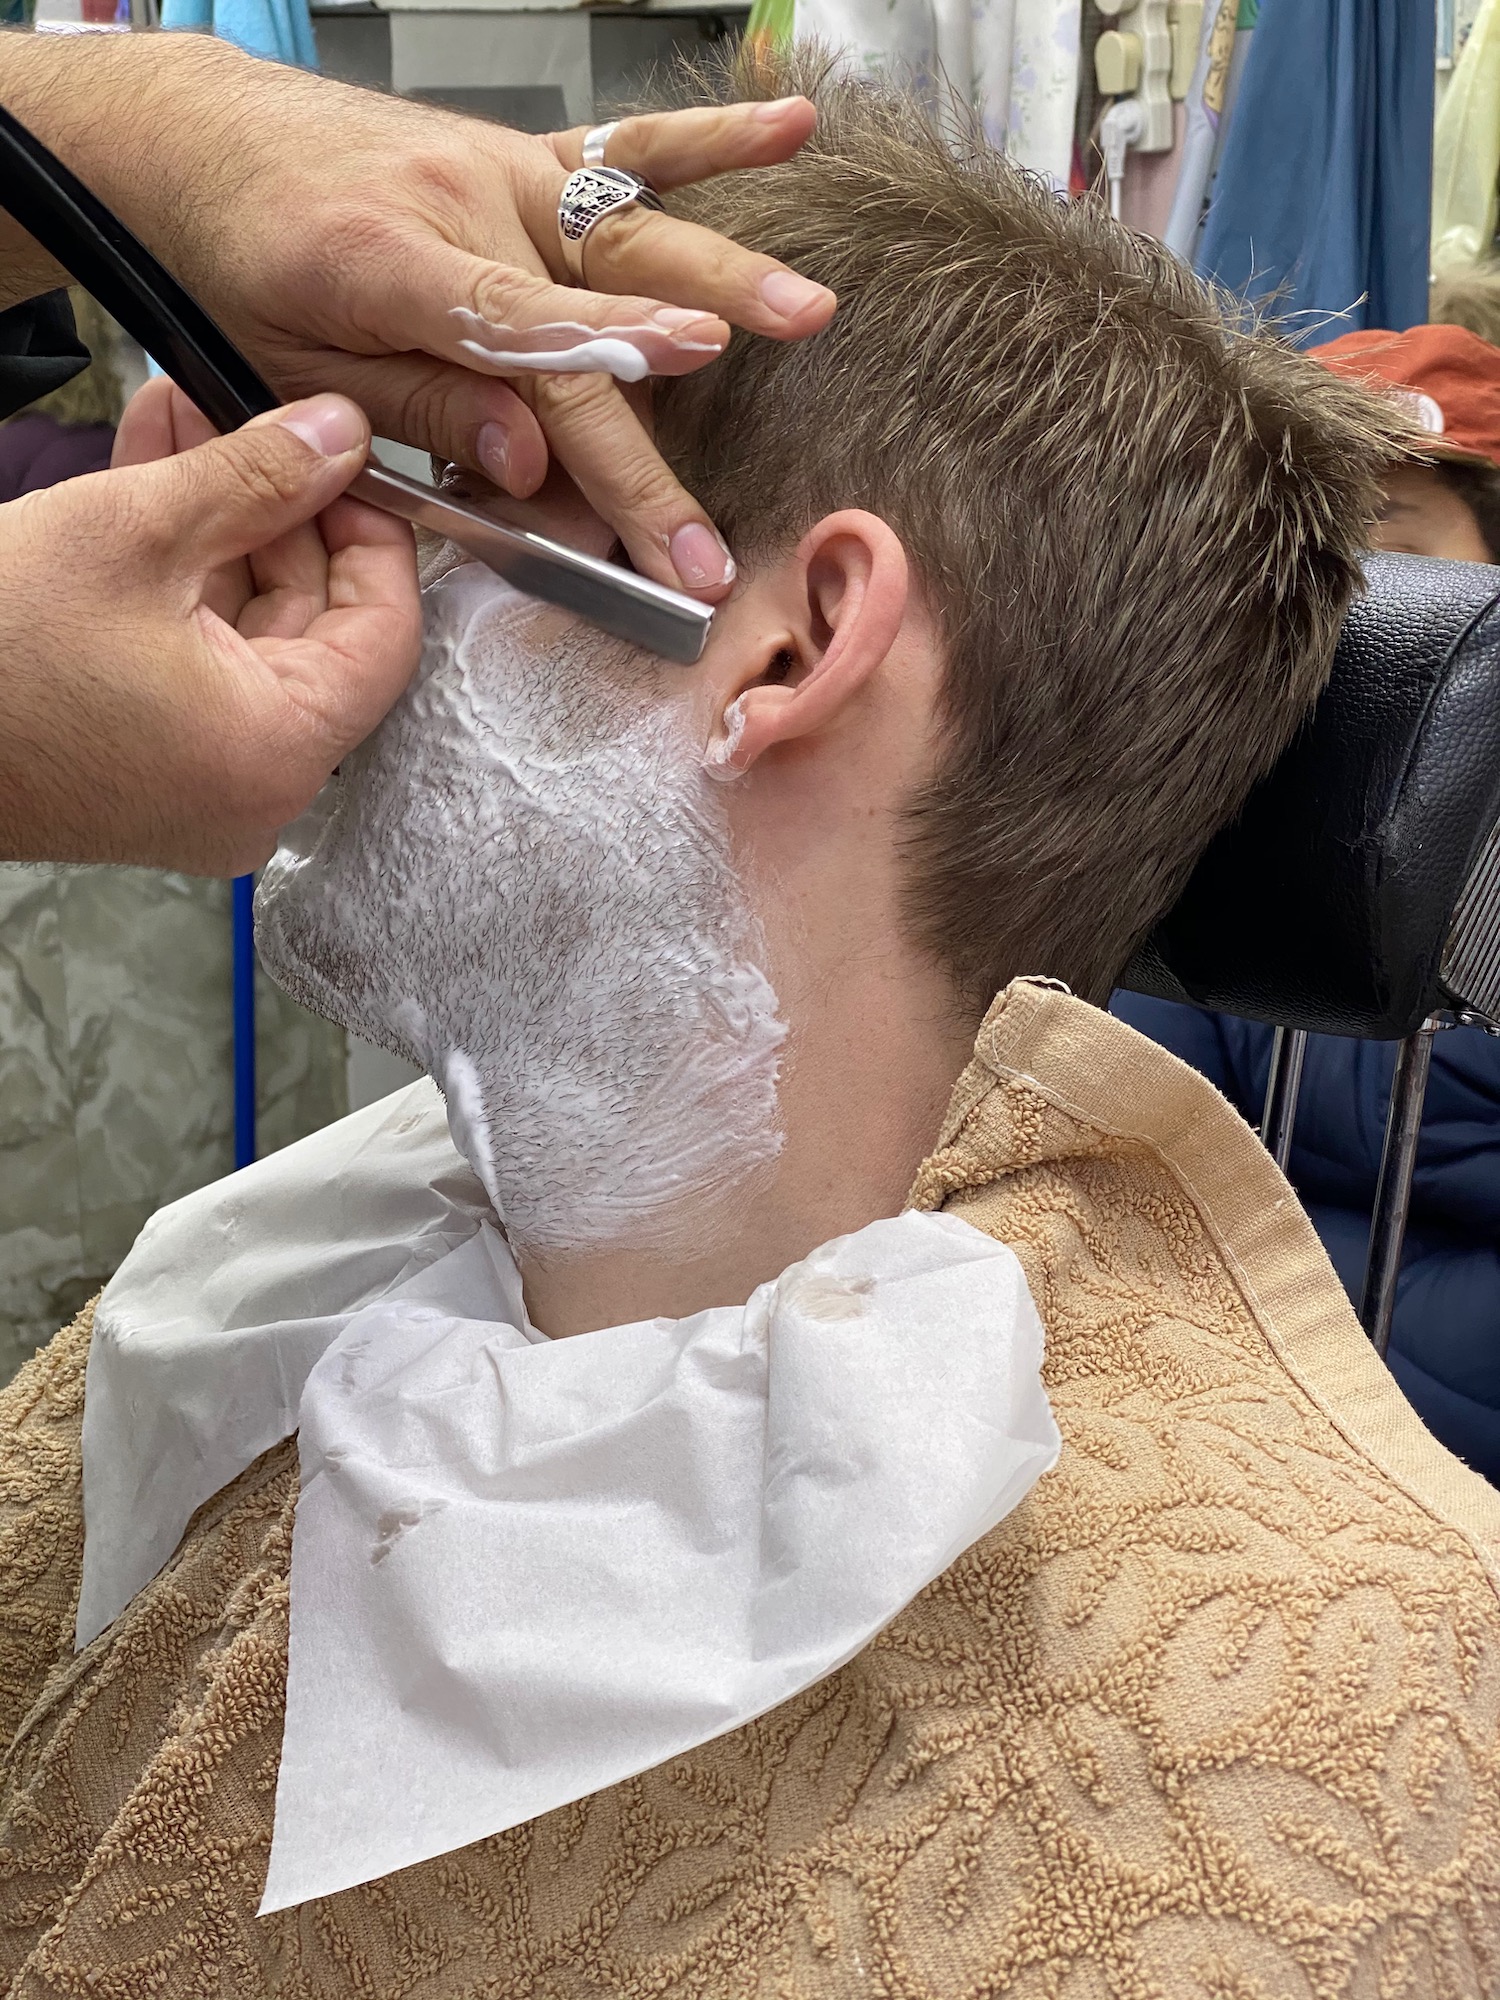 a person shaving a man's head